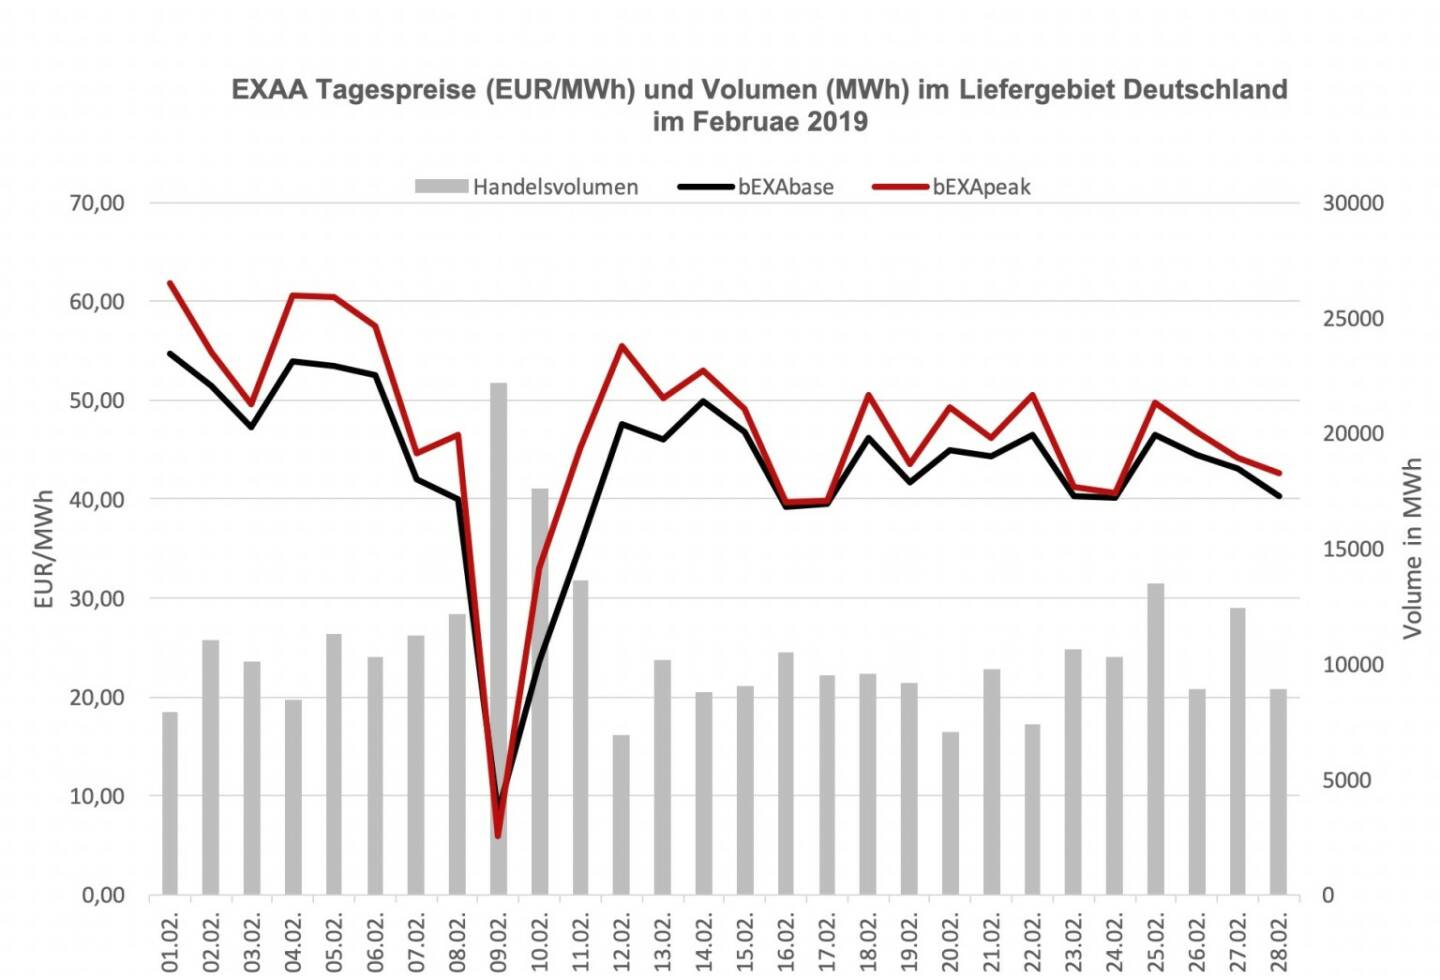 EXAA Tagespreise (EUR/MWh) und Volumen (MWh) im Liefergebiet Deutschland im Februar 2019